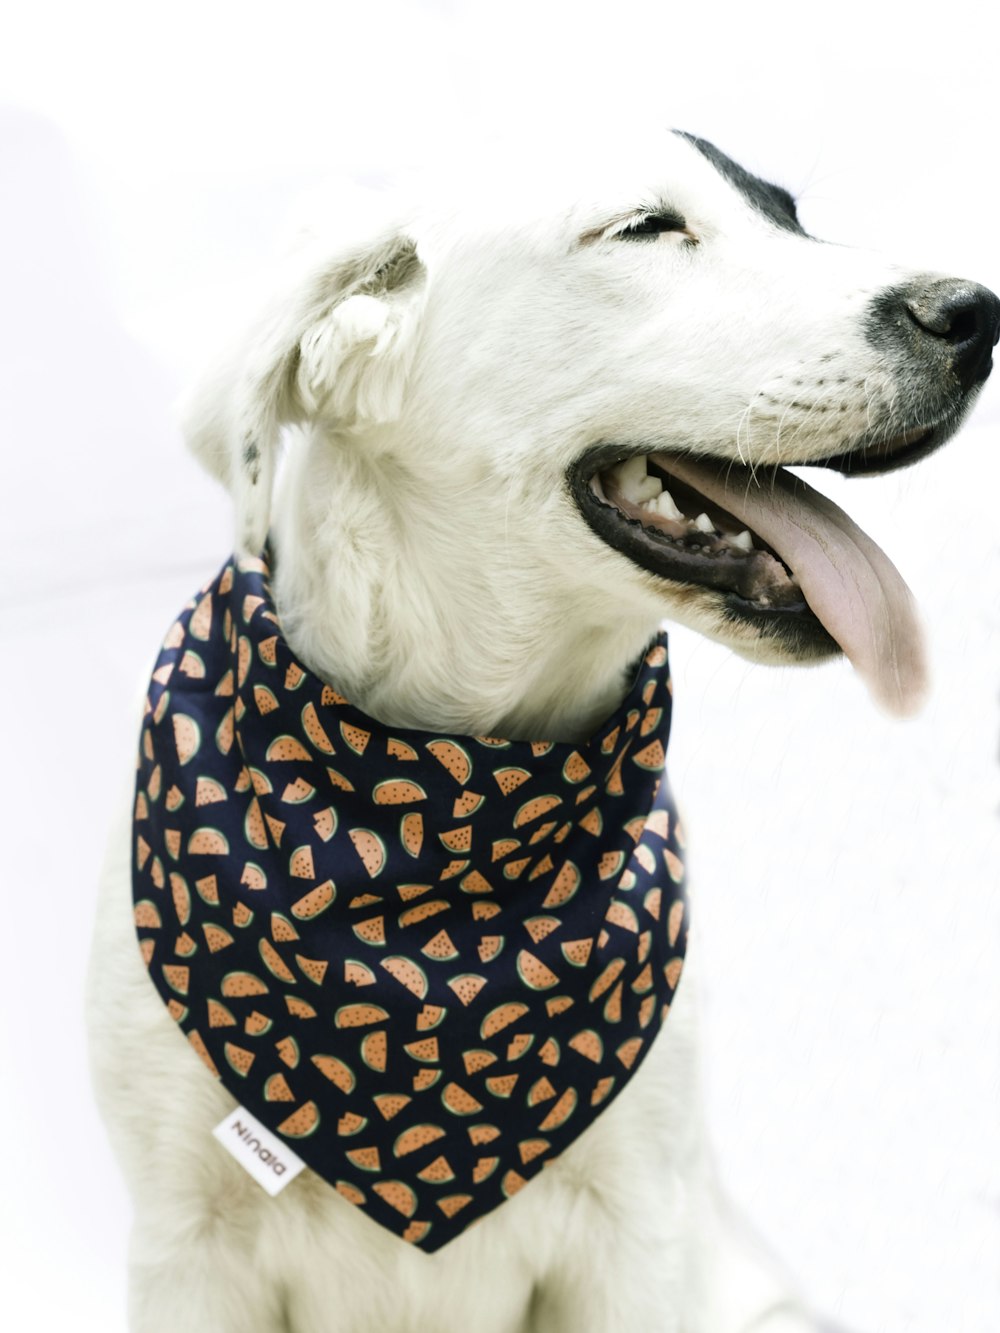 white short coated dog wearing blue and white polka dot shirt